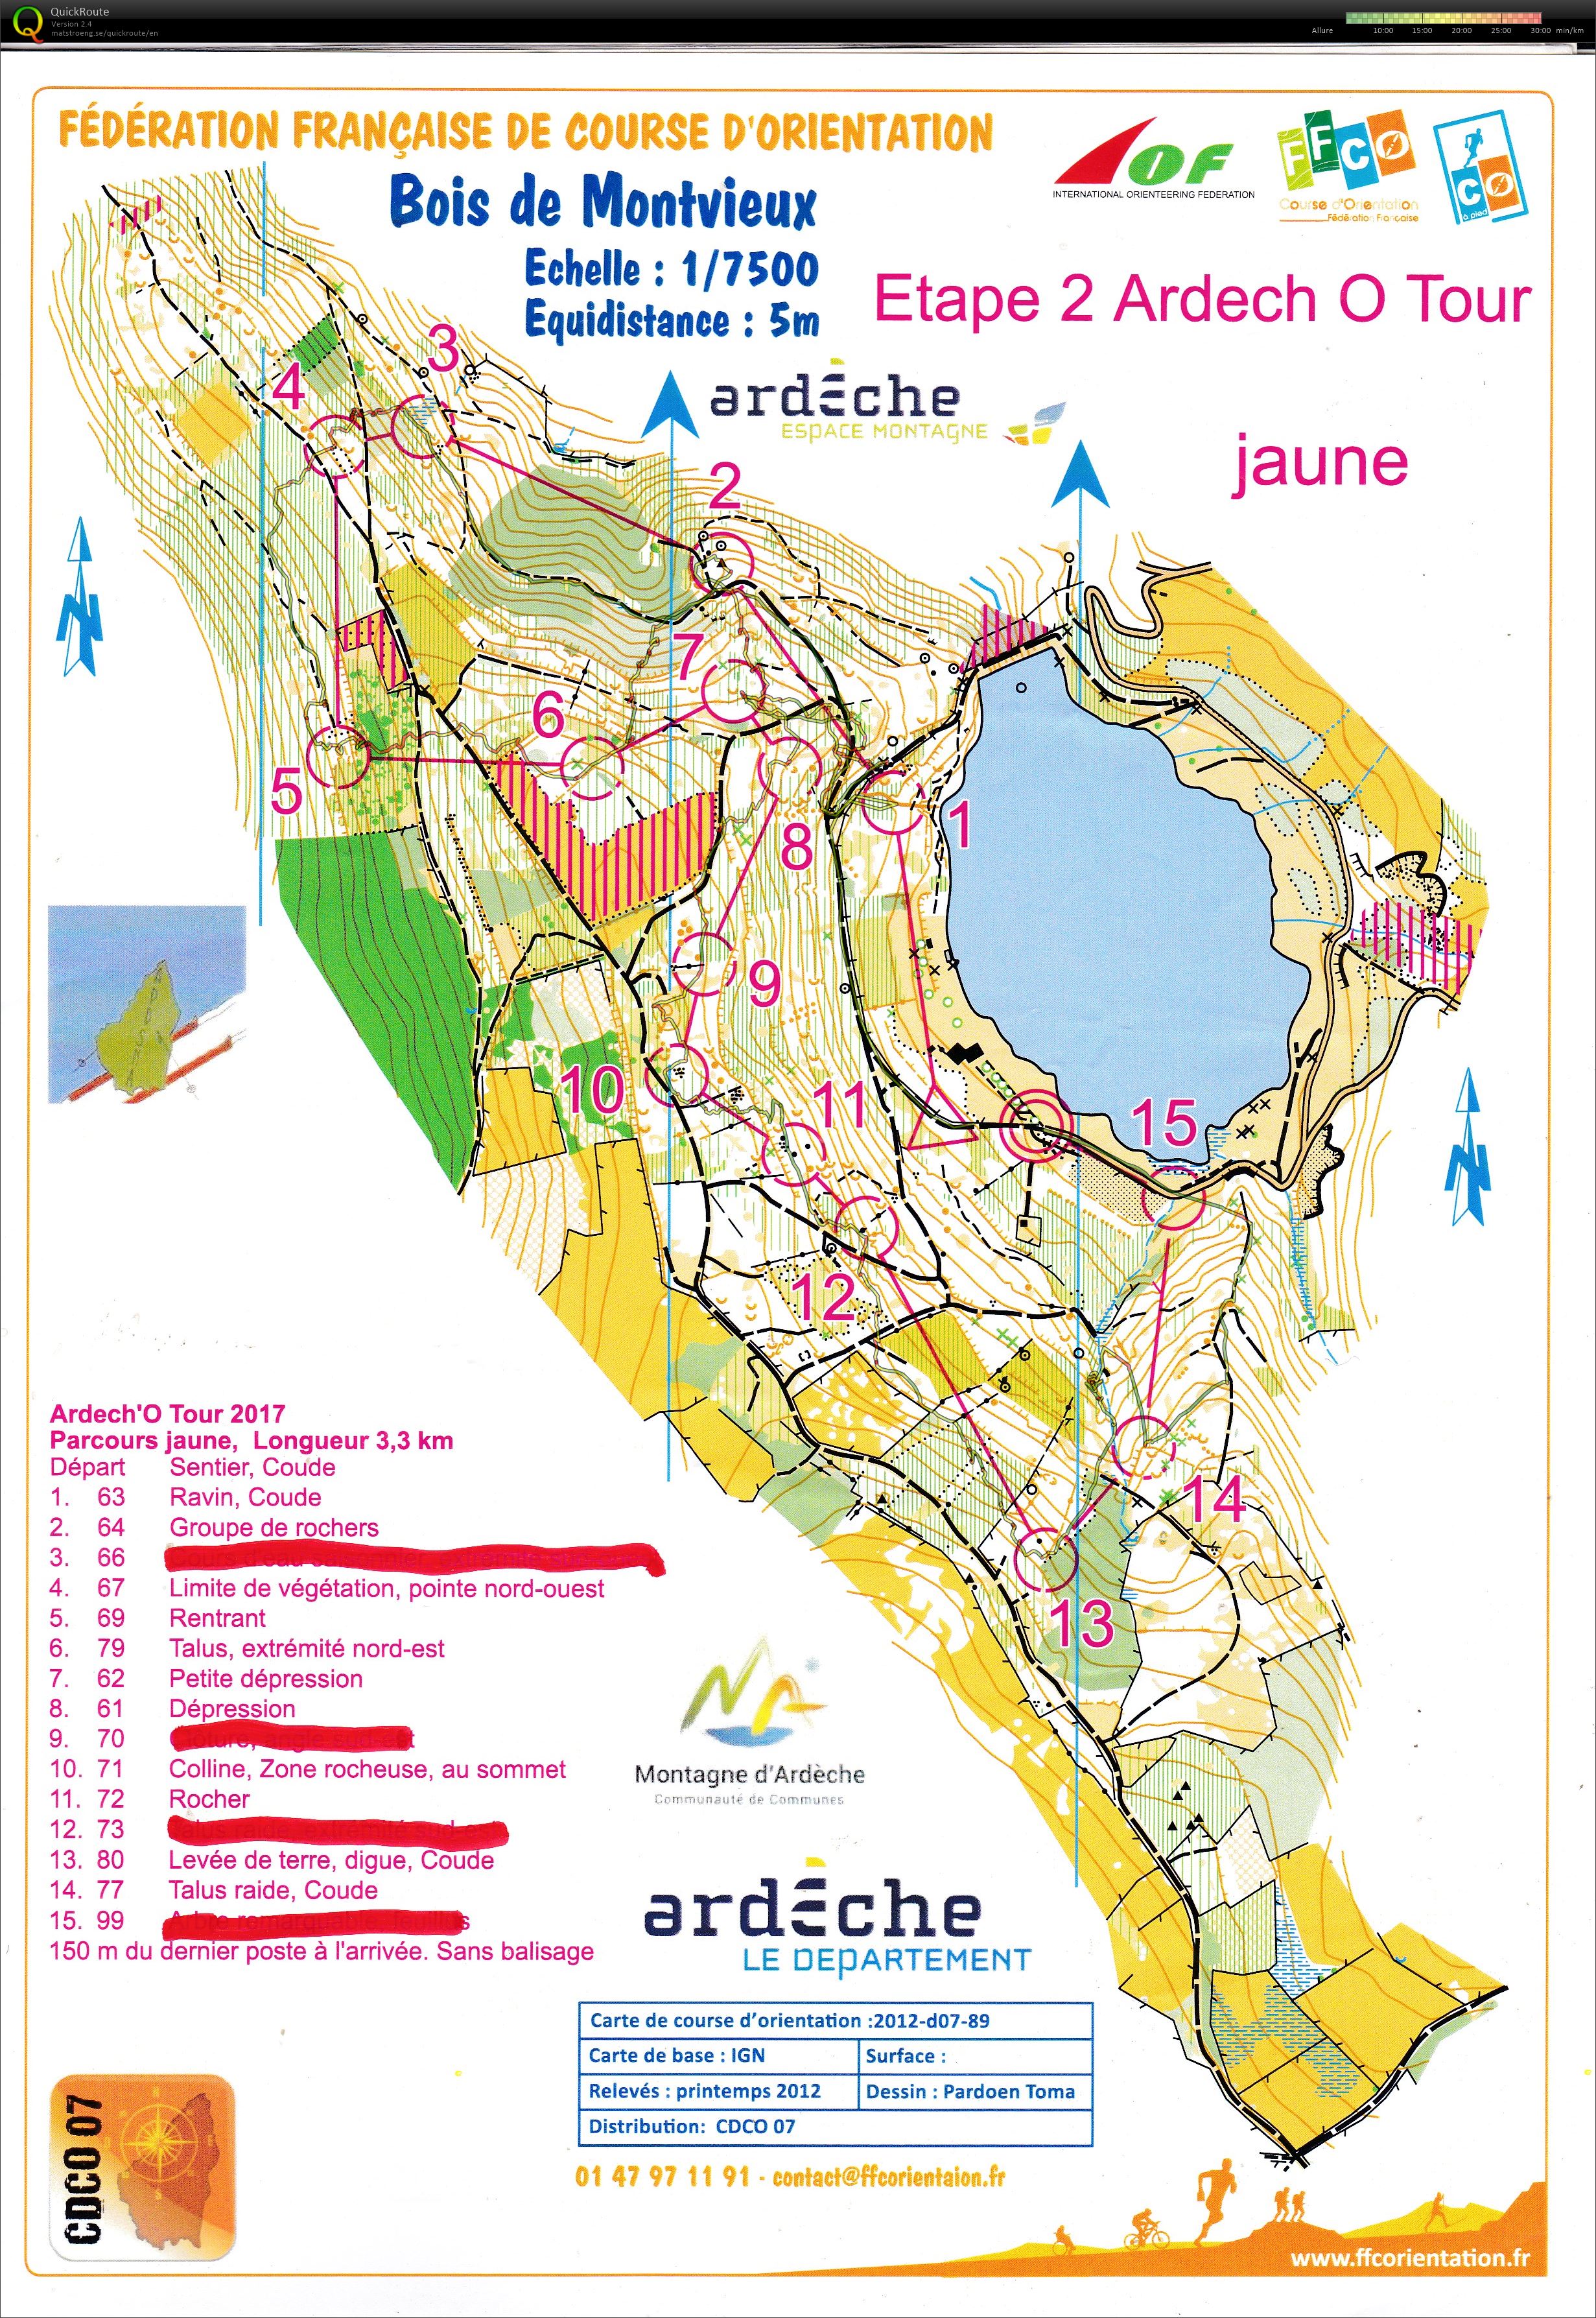 Ardèche'O Tour - Coucouron (27-07-2019)